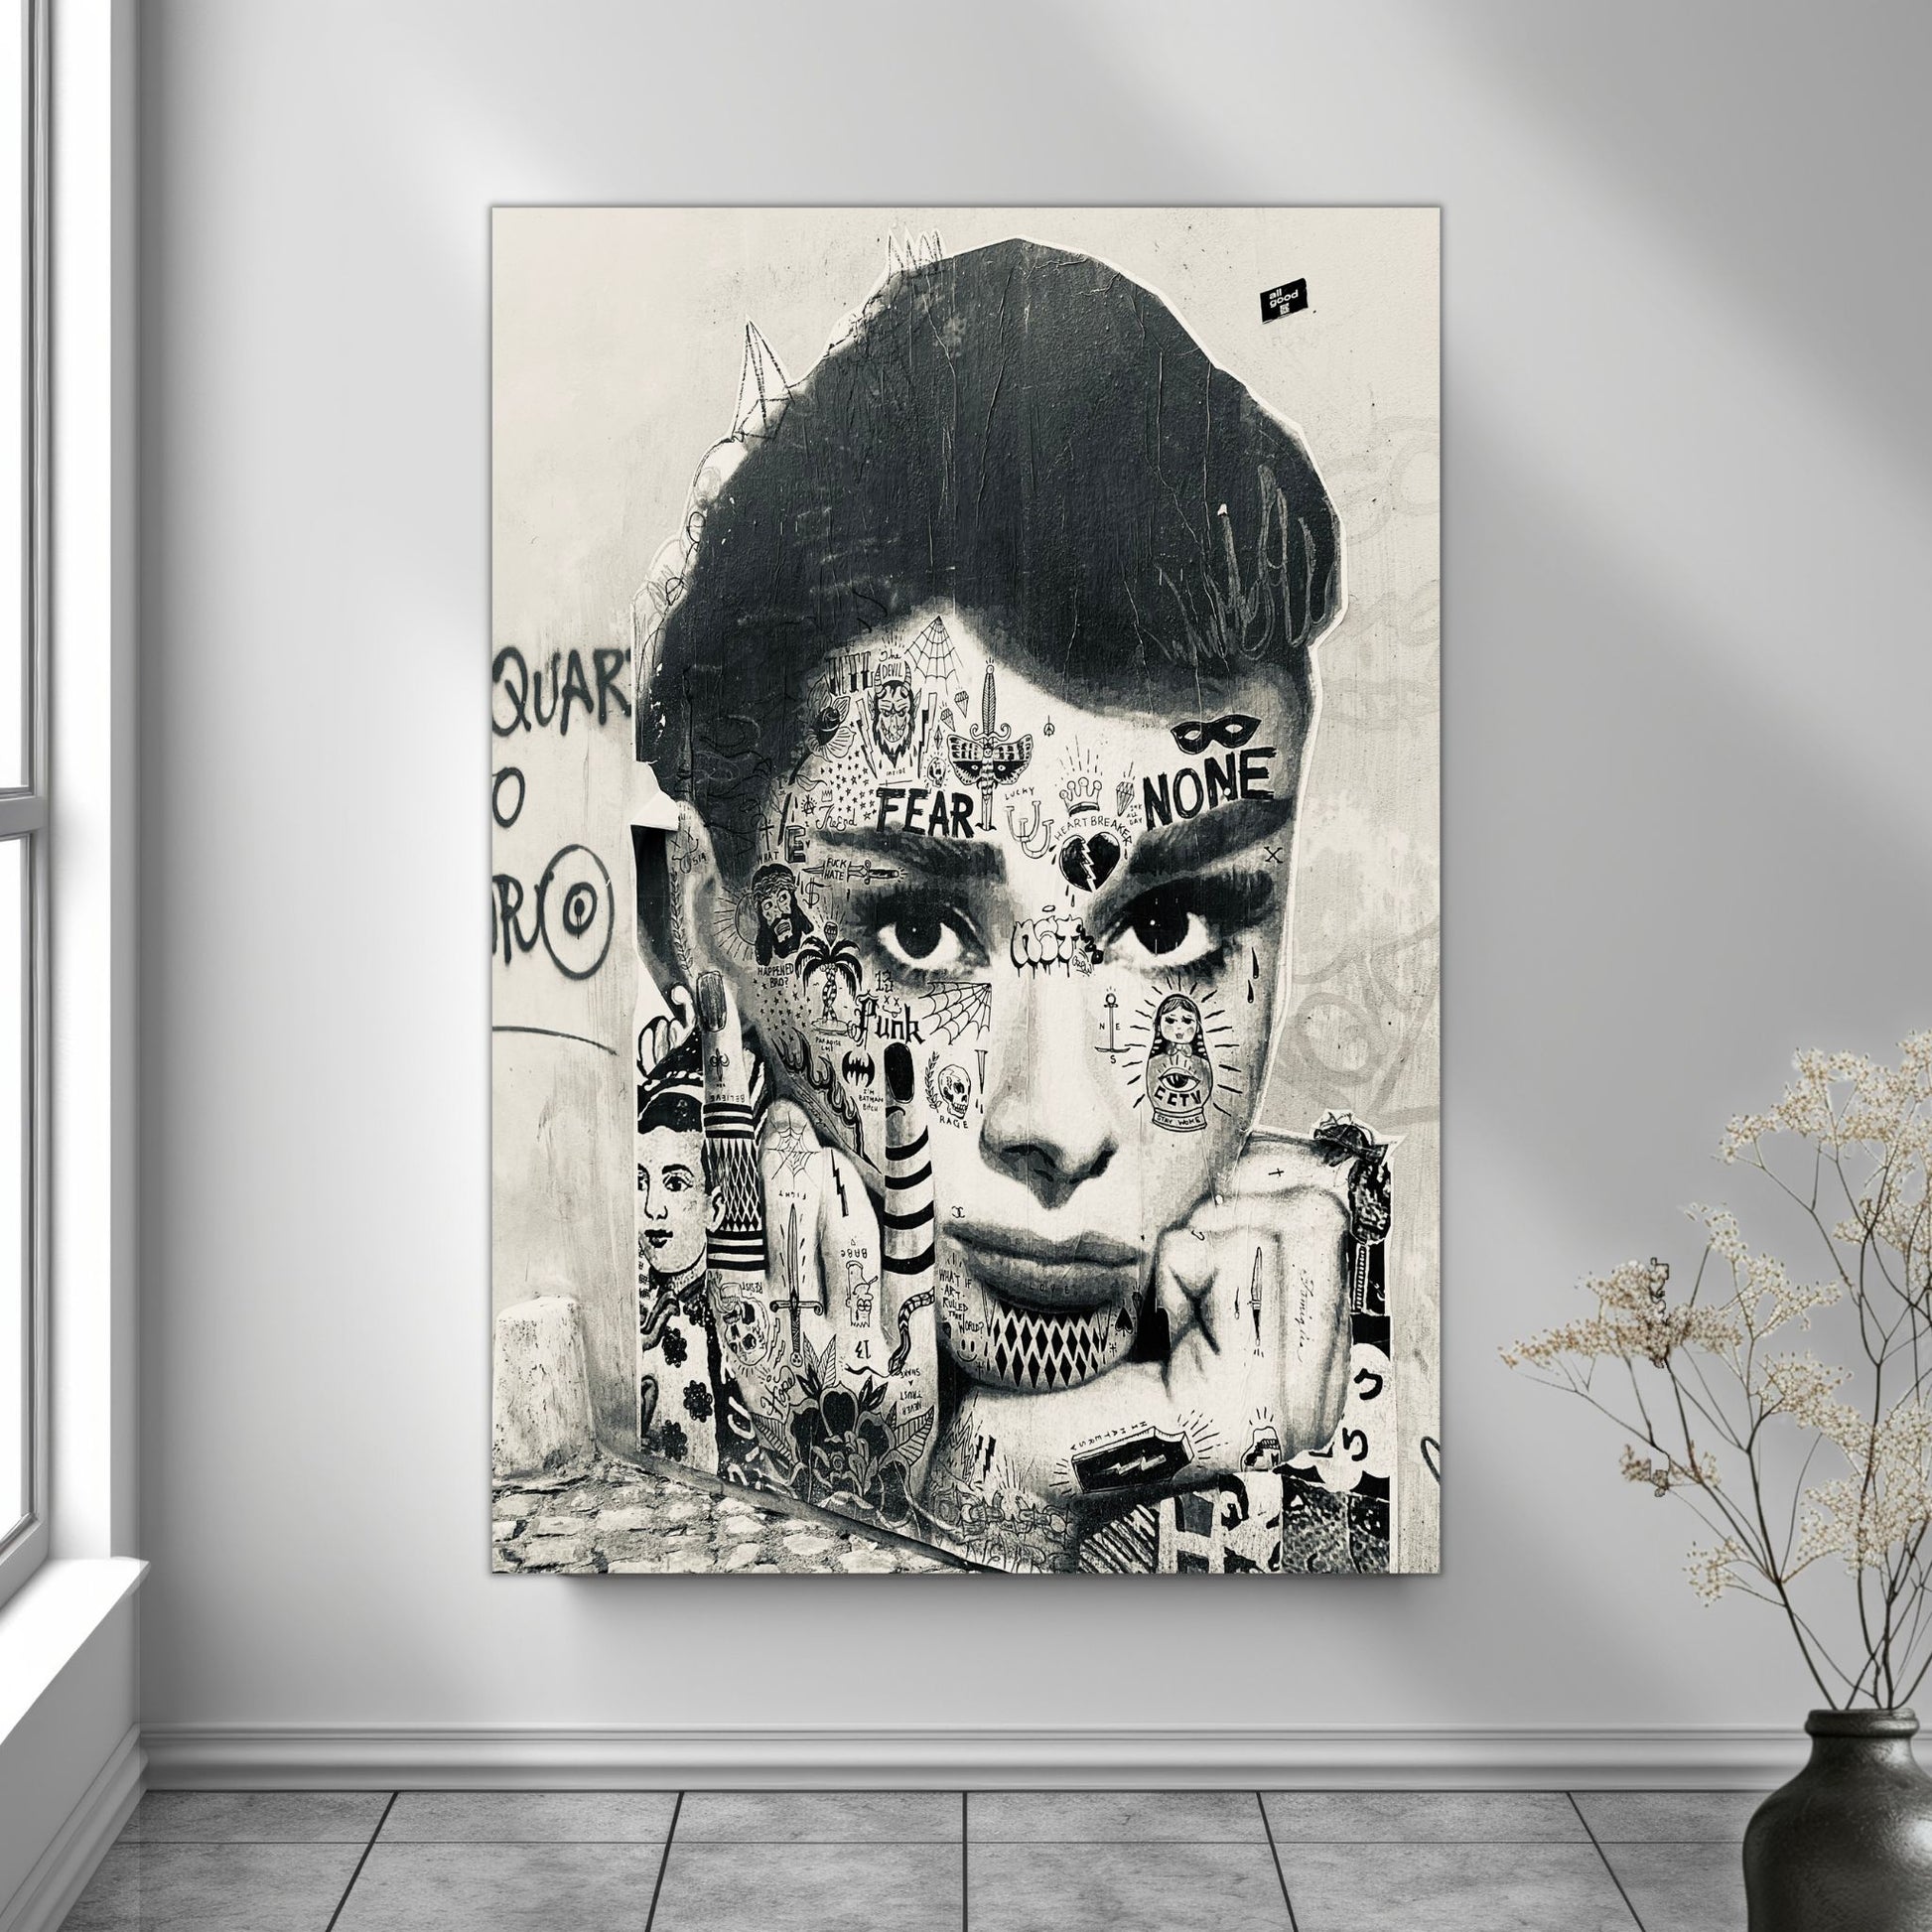 La deg bli transportert til den pulserende gatemiljøet i Roma med "Audrey Hepburn" på leret. Dette paste up kunstverket, inspirert av den ikoniske skuespilleren, gir en smakebit av den unike gatekunsten som preger byen. Illystrasjonen viser motivet på en vegg.